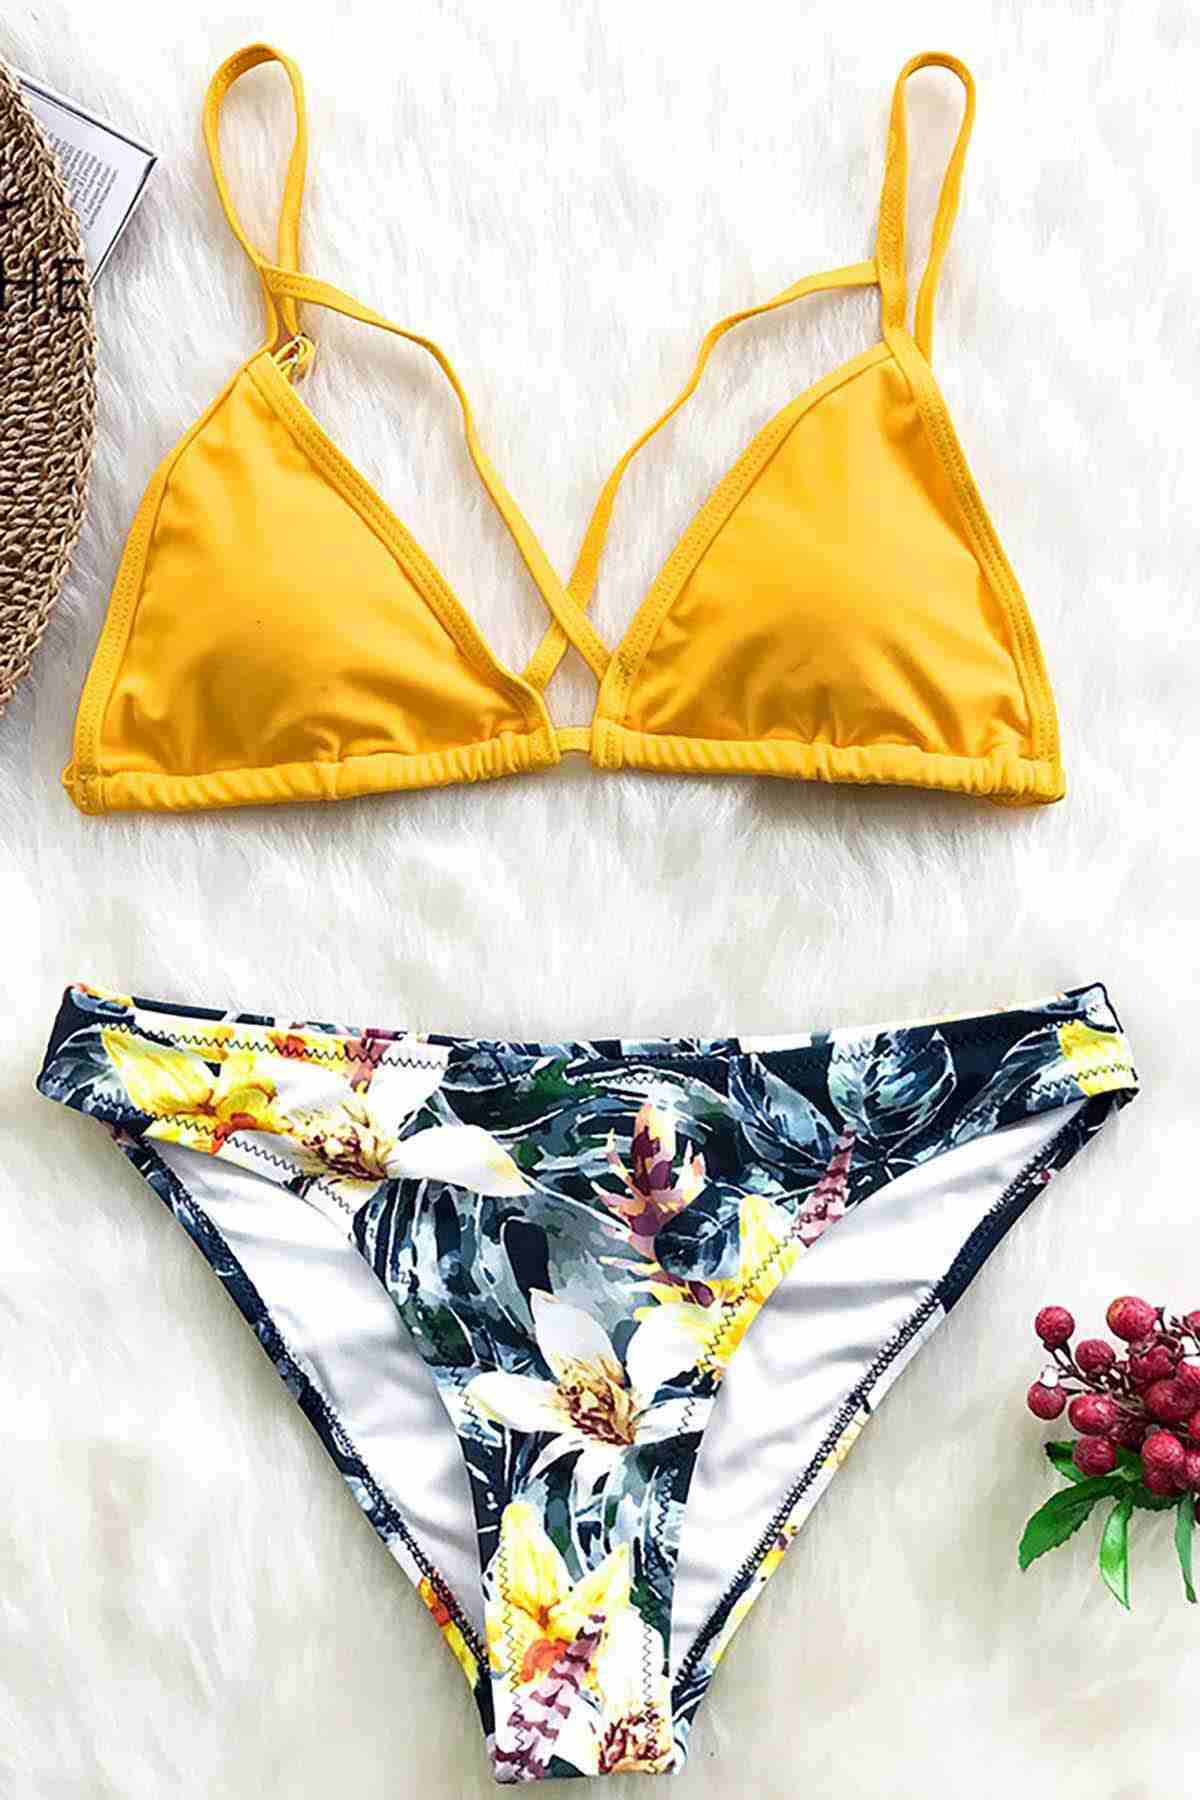 Printed Yellow Bikini Top